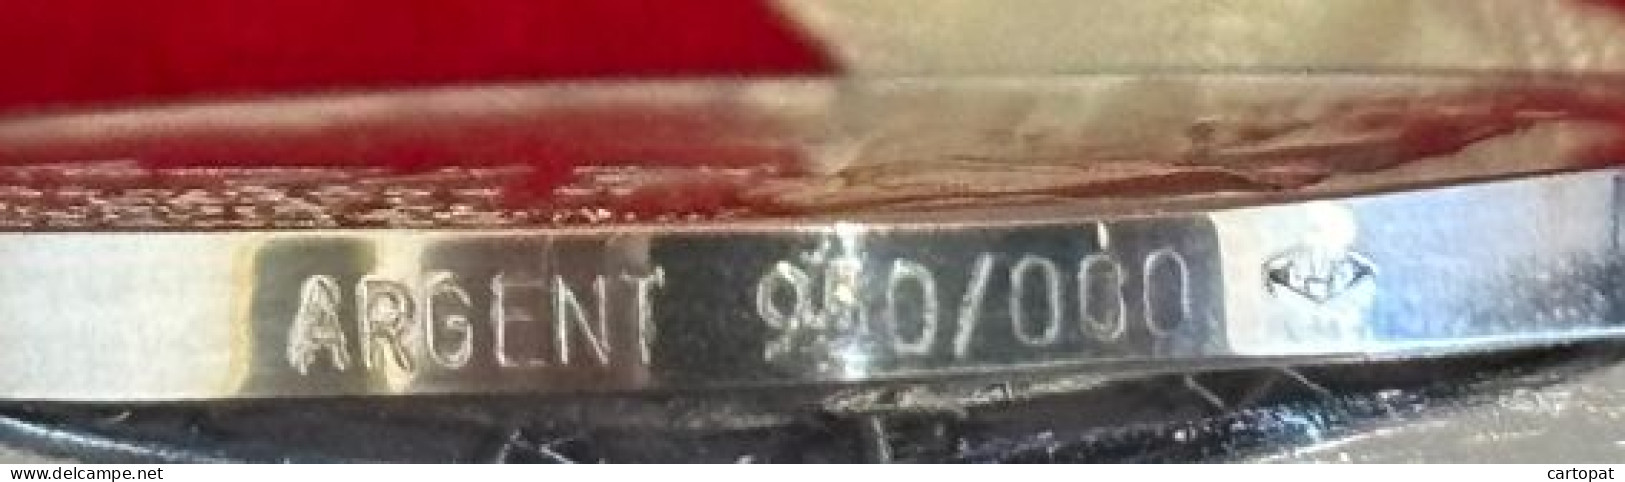 MEDAILLE COMMEMORATIVE DE JOHN KENNEDY EN AGENT 950/1000 DIAMETRE 39MM RARE! - Royaux/De Noblesse